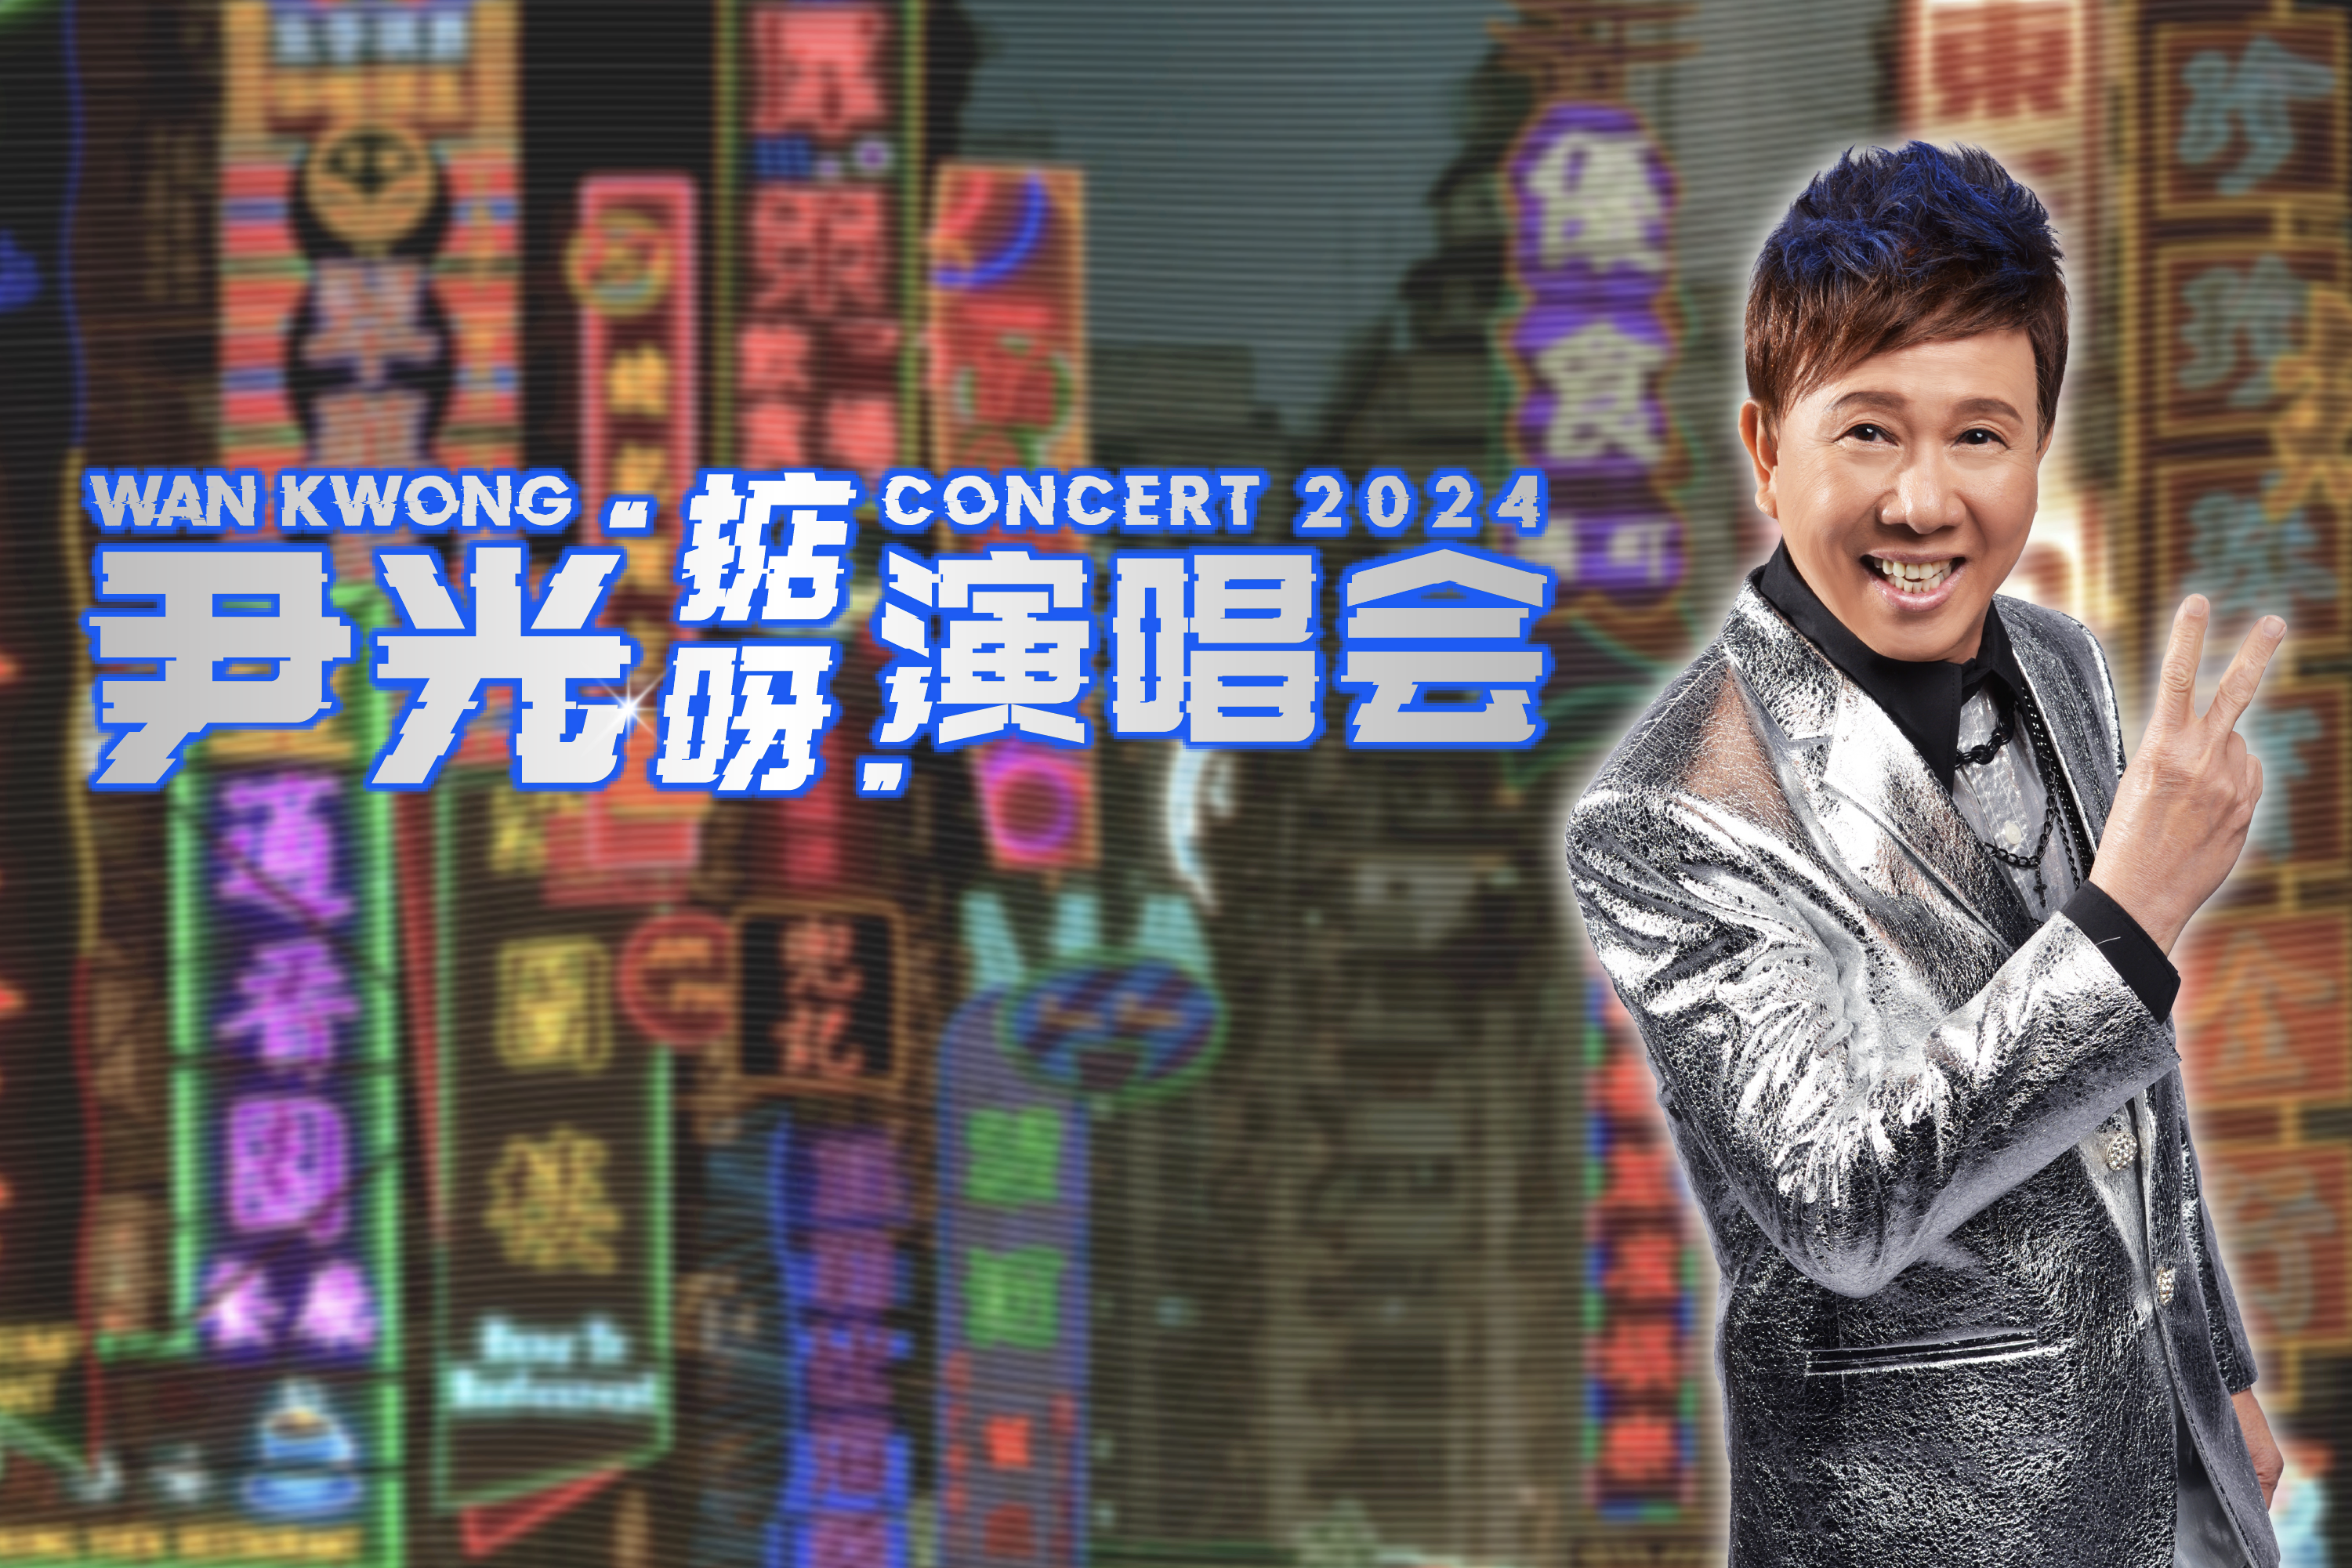 Wan Kwong Concert 2024